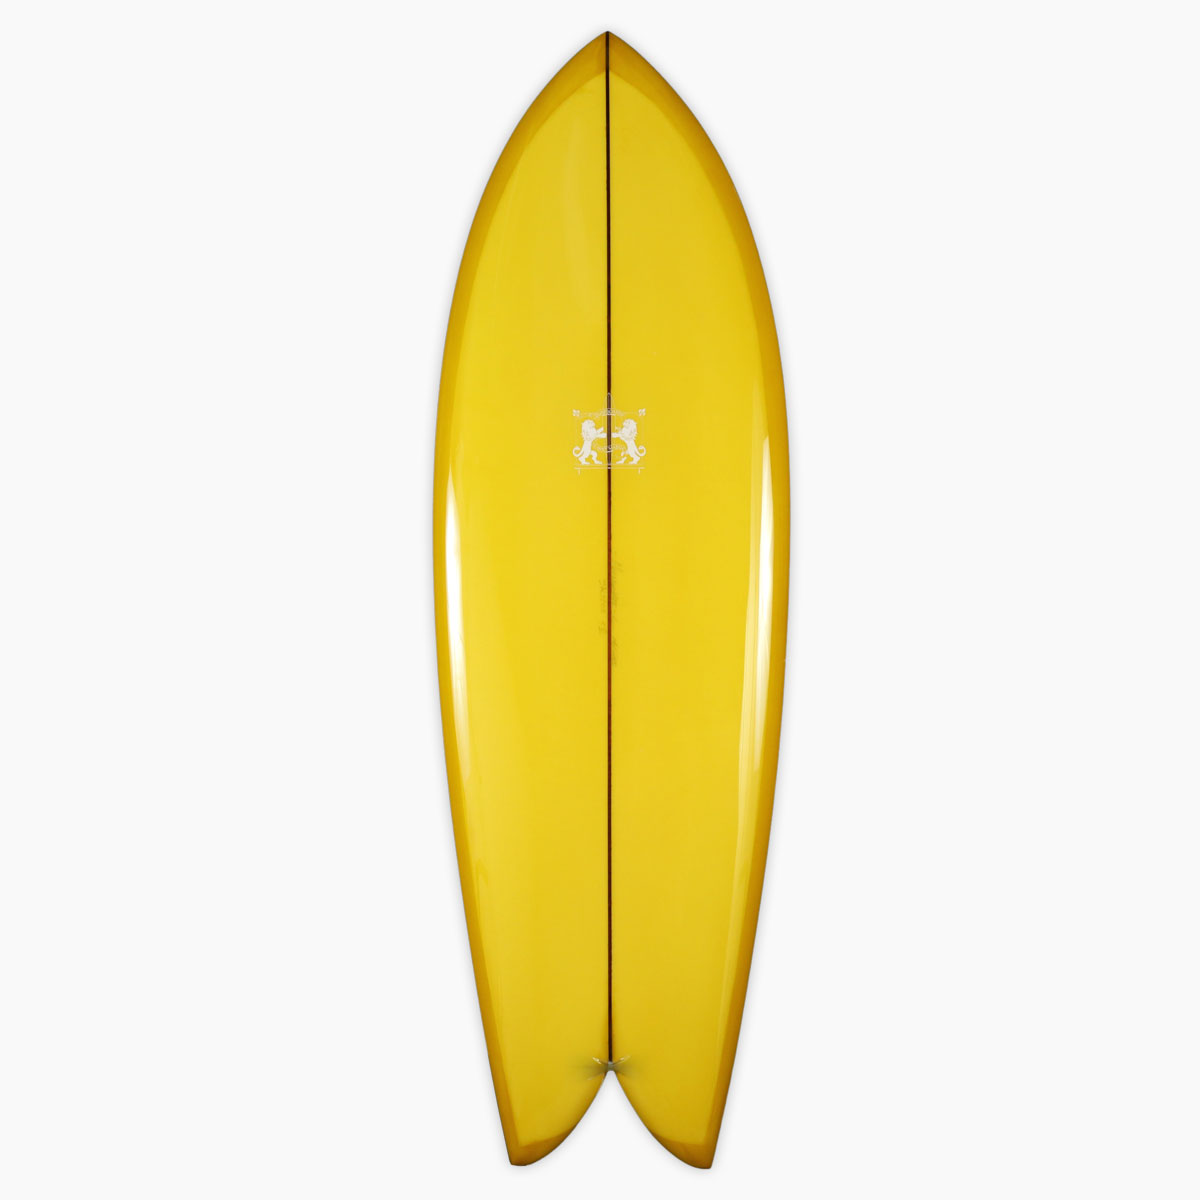 ラリー メイビル サーフボード クラッシック フィッシュ LARRY MABILE SURFBOARD CLASSIC FISH 5'6'' フィッシュ 即納